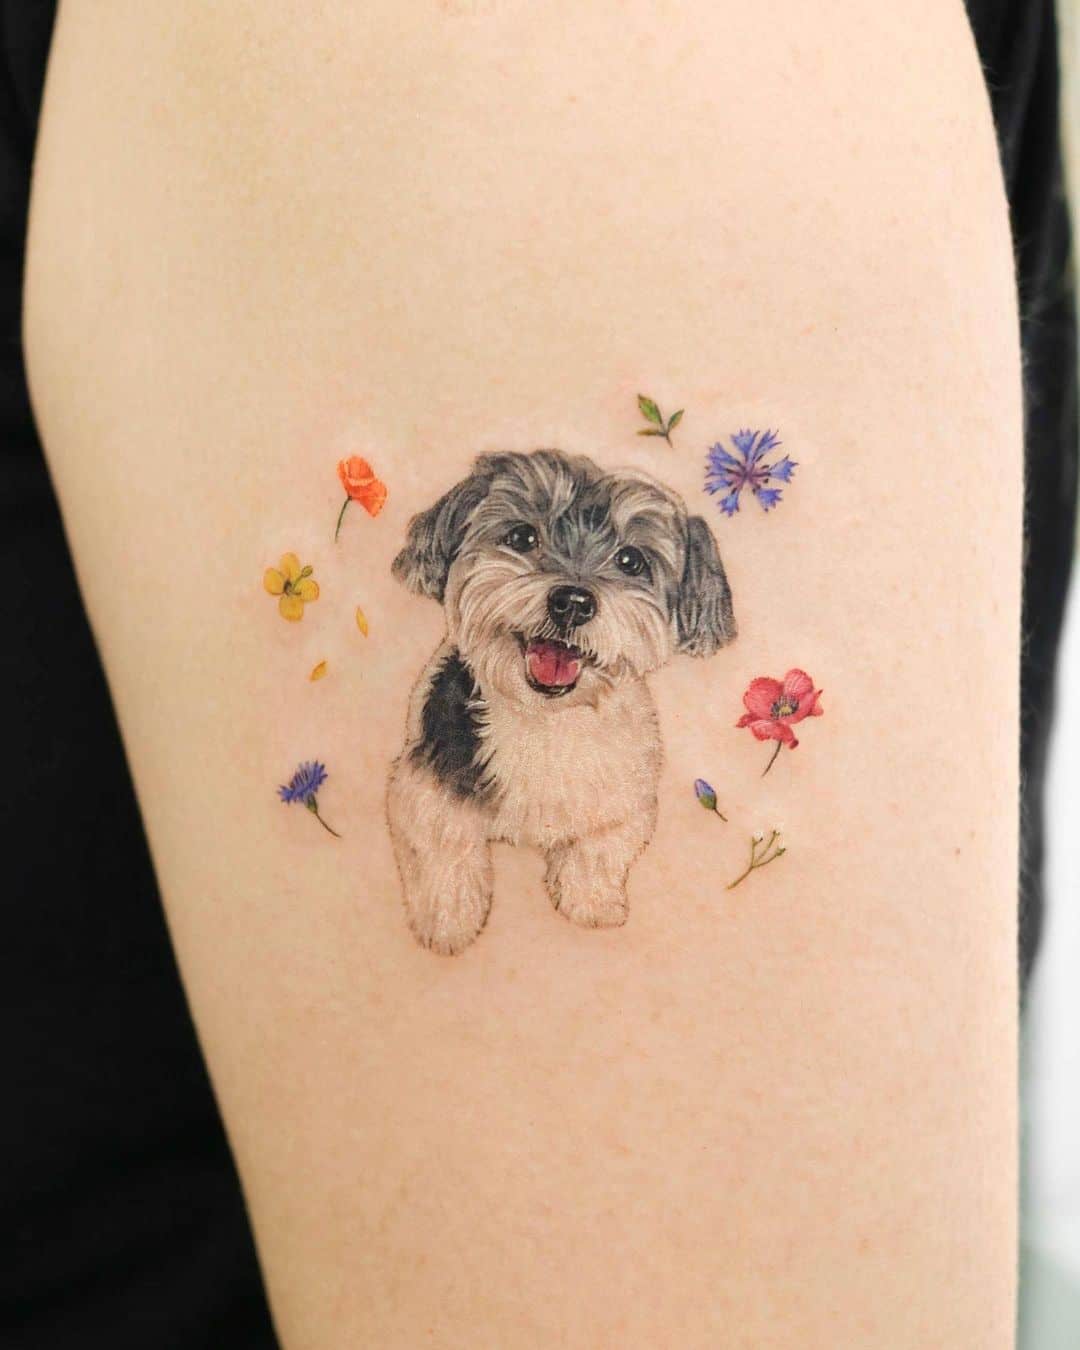 45 Dog Tattoos That Celebrate Fur Babies